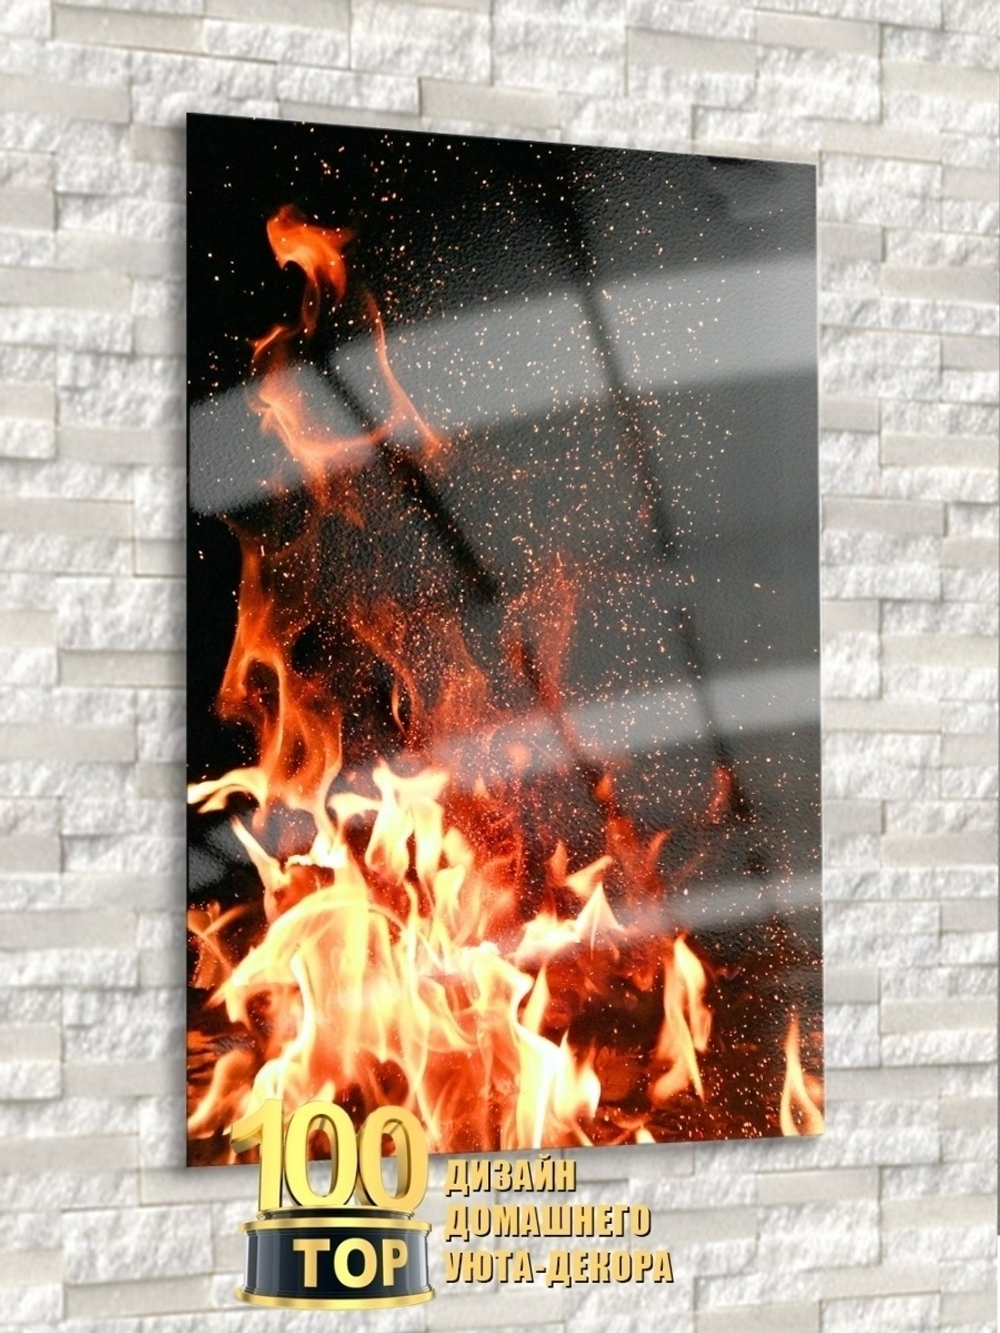 Модульная стеклянная интерьерная картина / Фотокартина на стекле / Огонь /Пламя /Искры, 28x40 см. Декор для дома, подарок